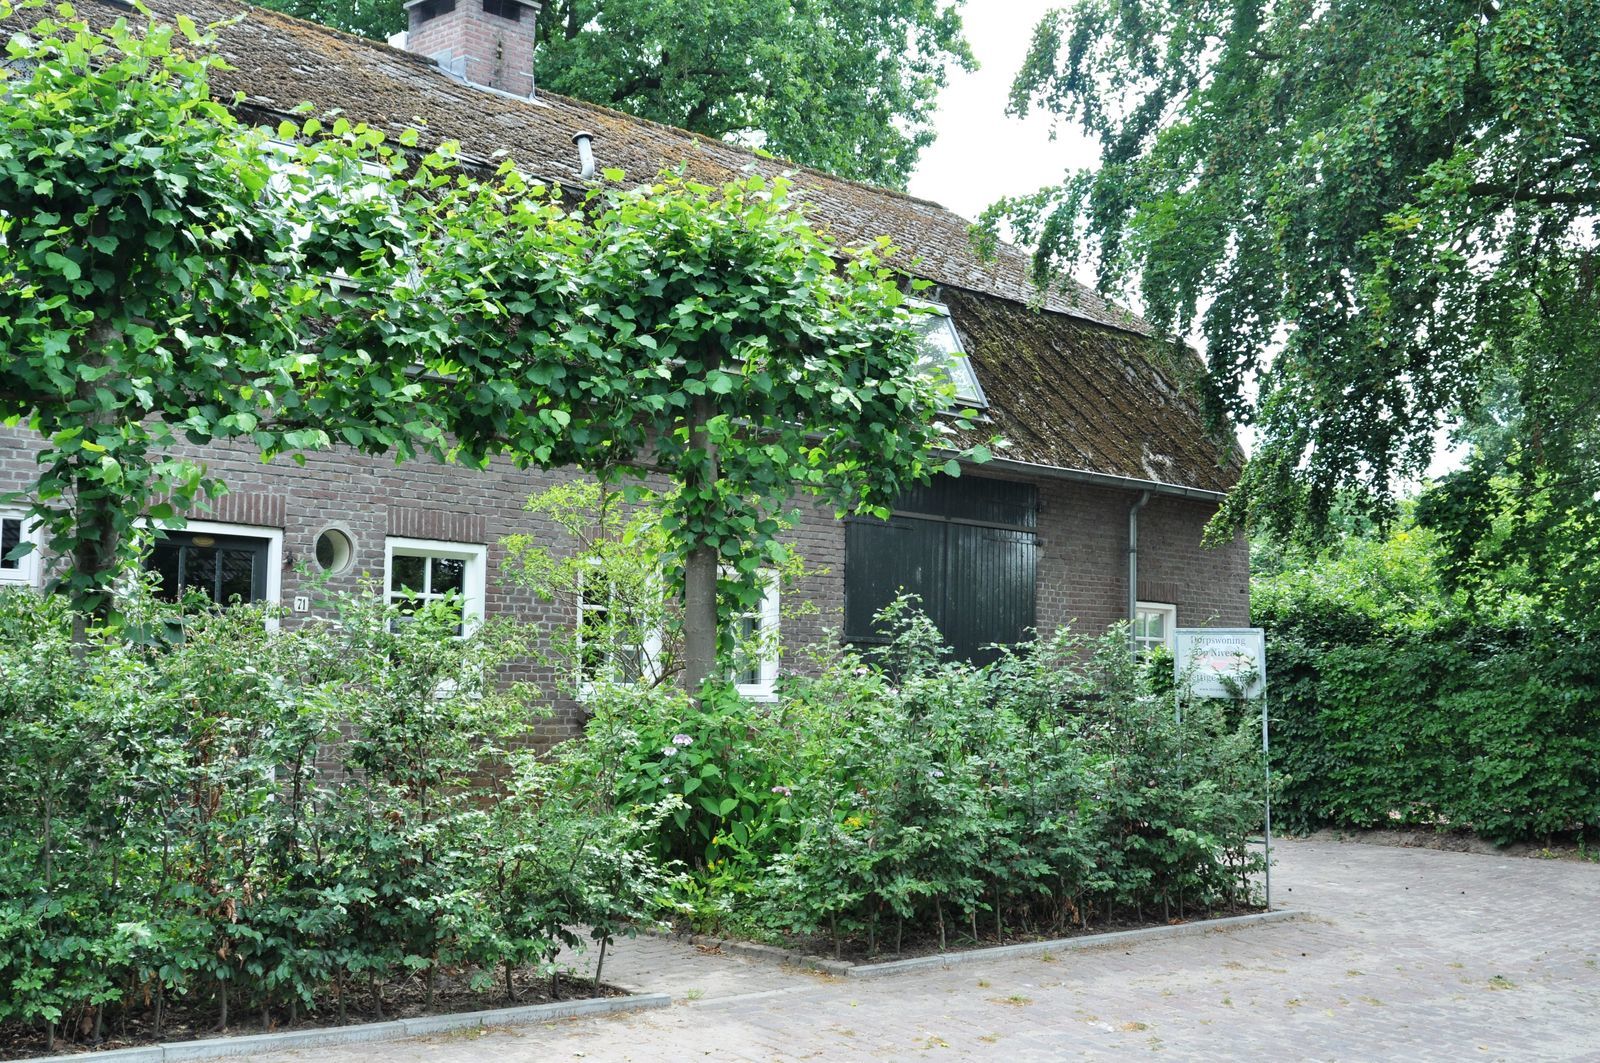 Buitenverblijf de Ruimte - vakantiehuis in Brabantse natuur